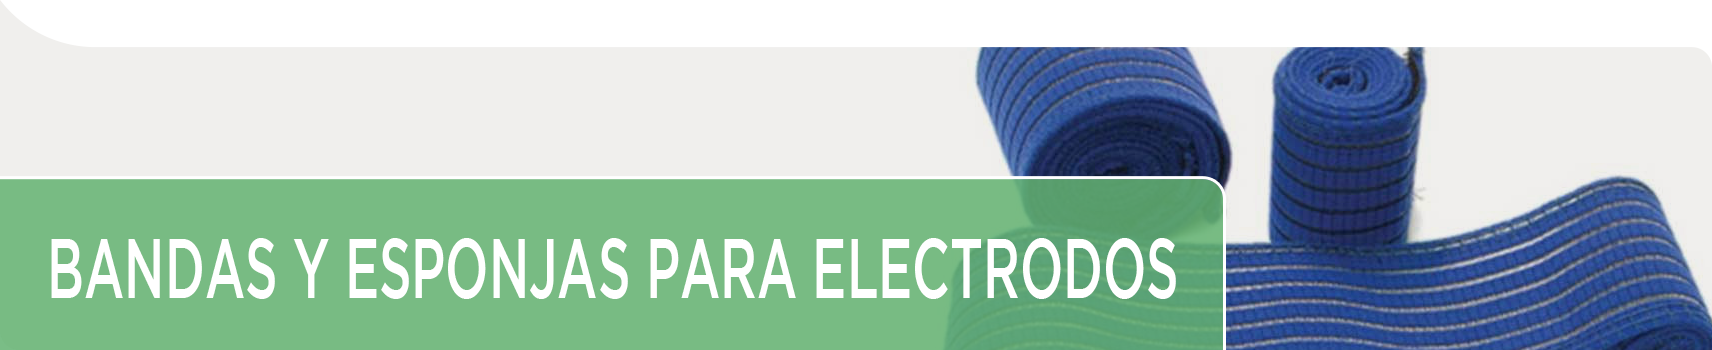 Bandas y esponjas para electrodos | Electroterapia | Envíos 34/48h